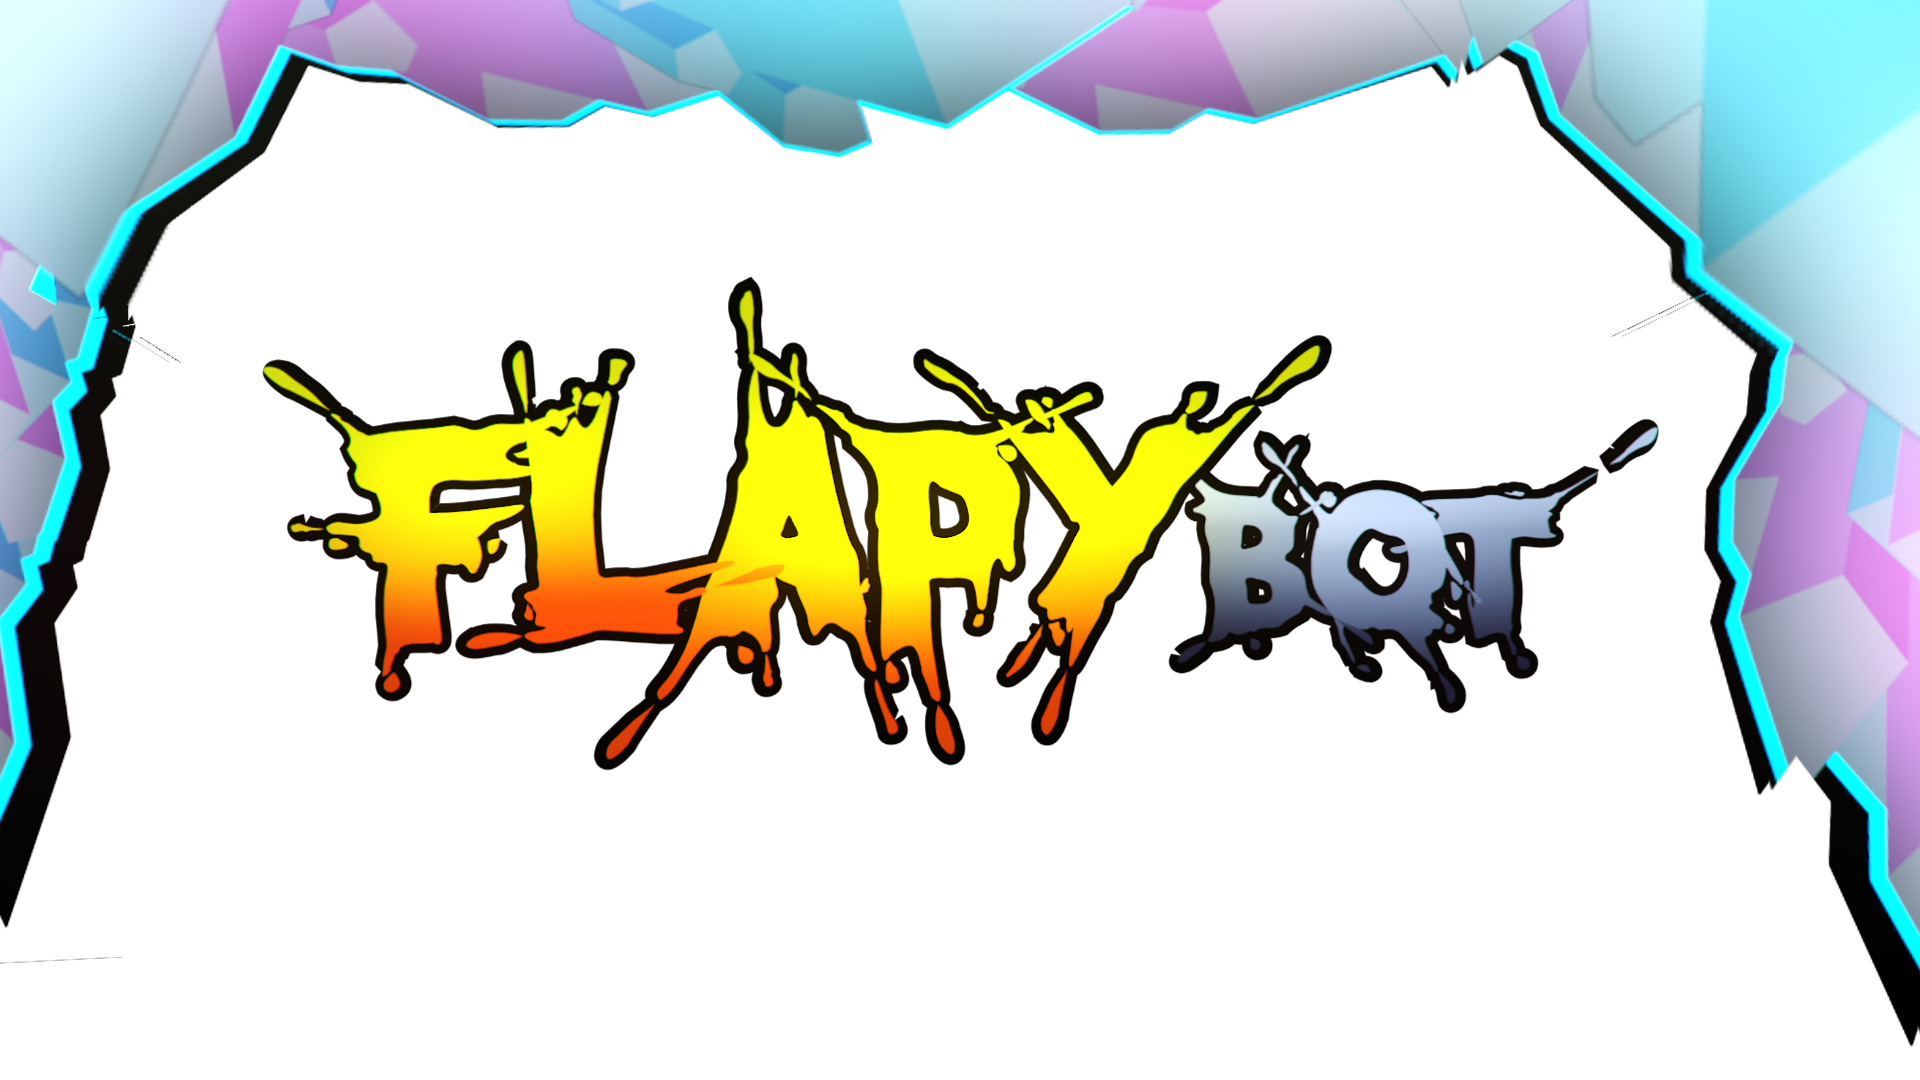 Flapy bot